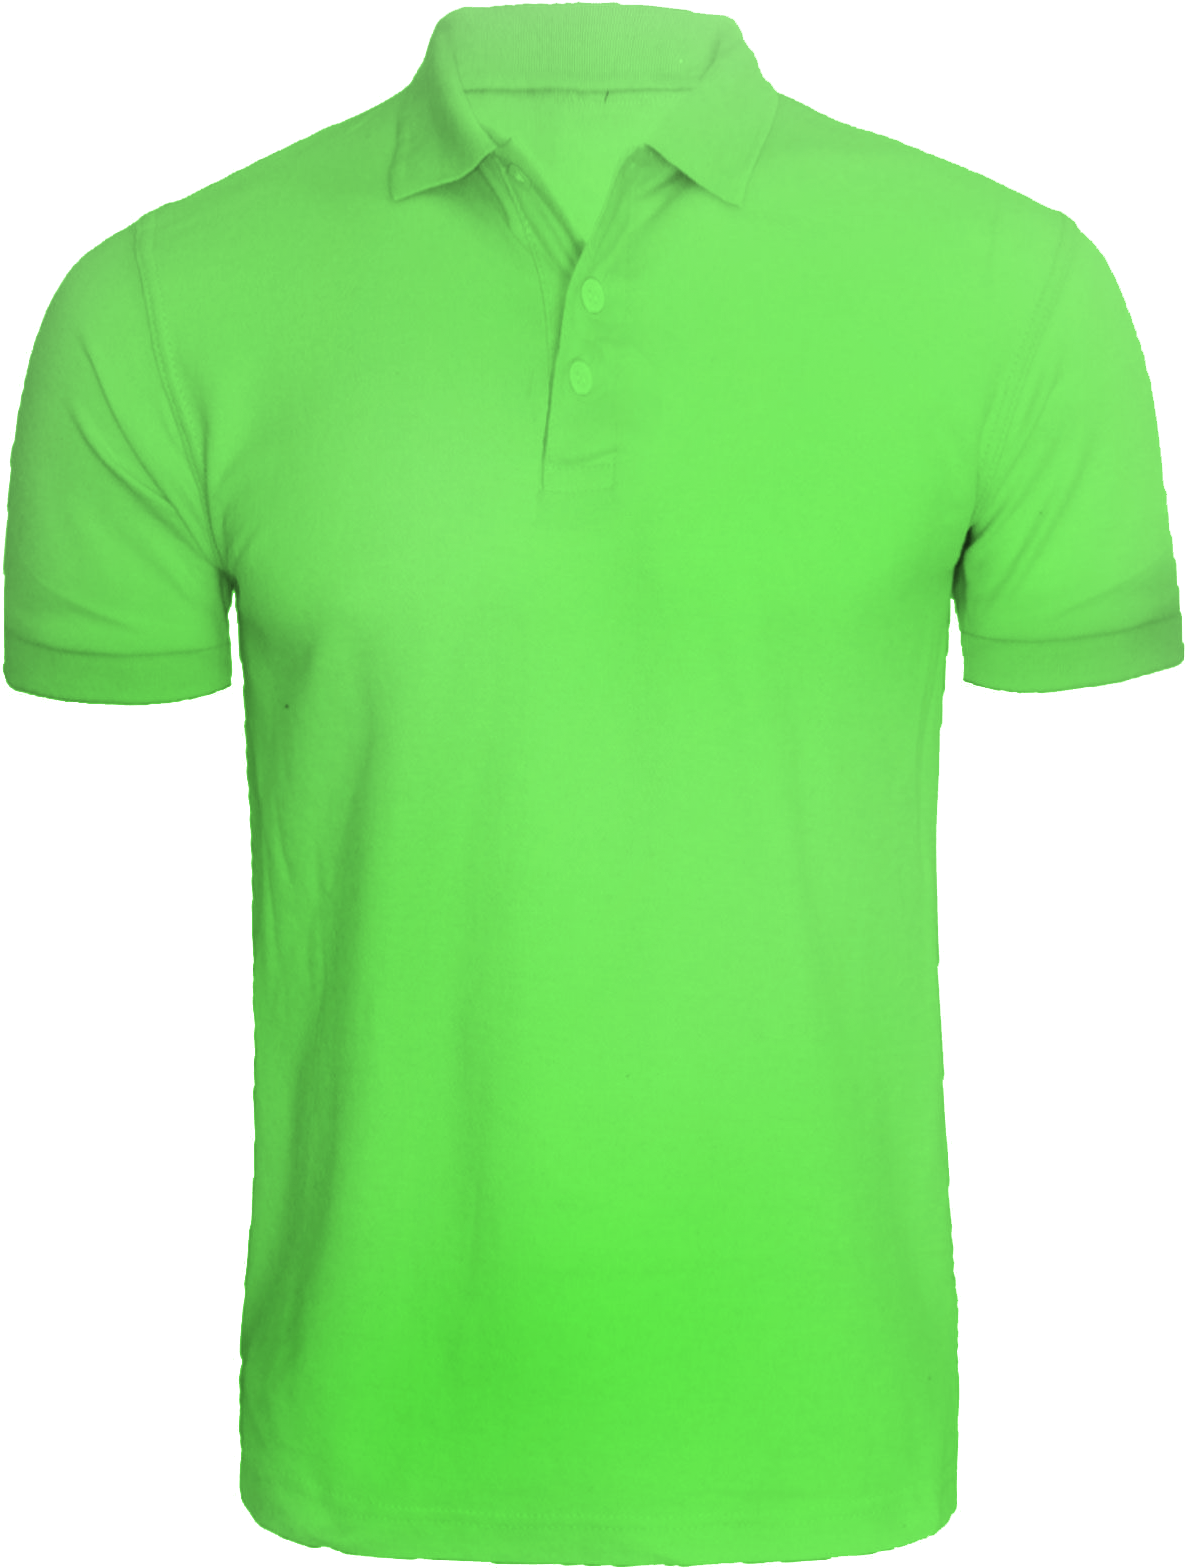 Neon Green Polo Shirt PNG image